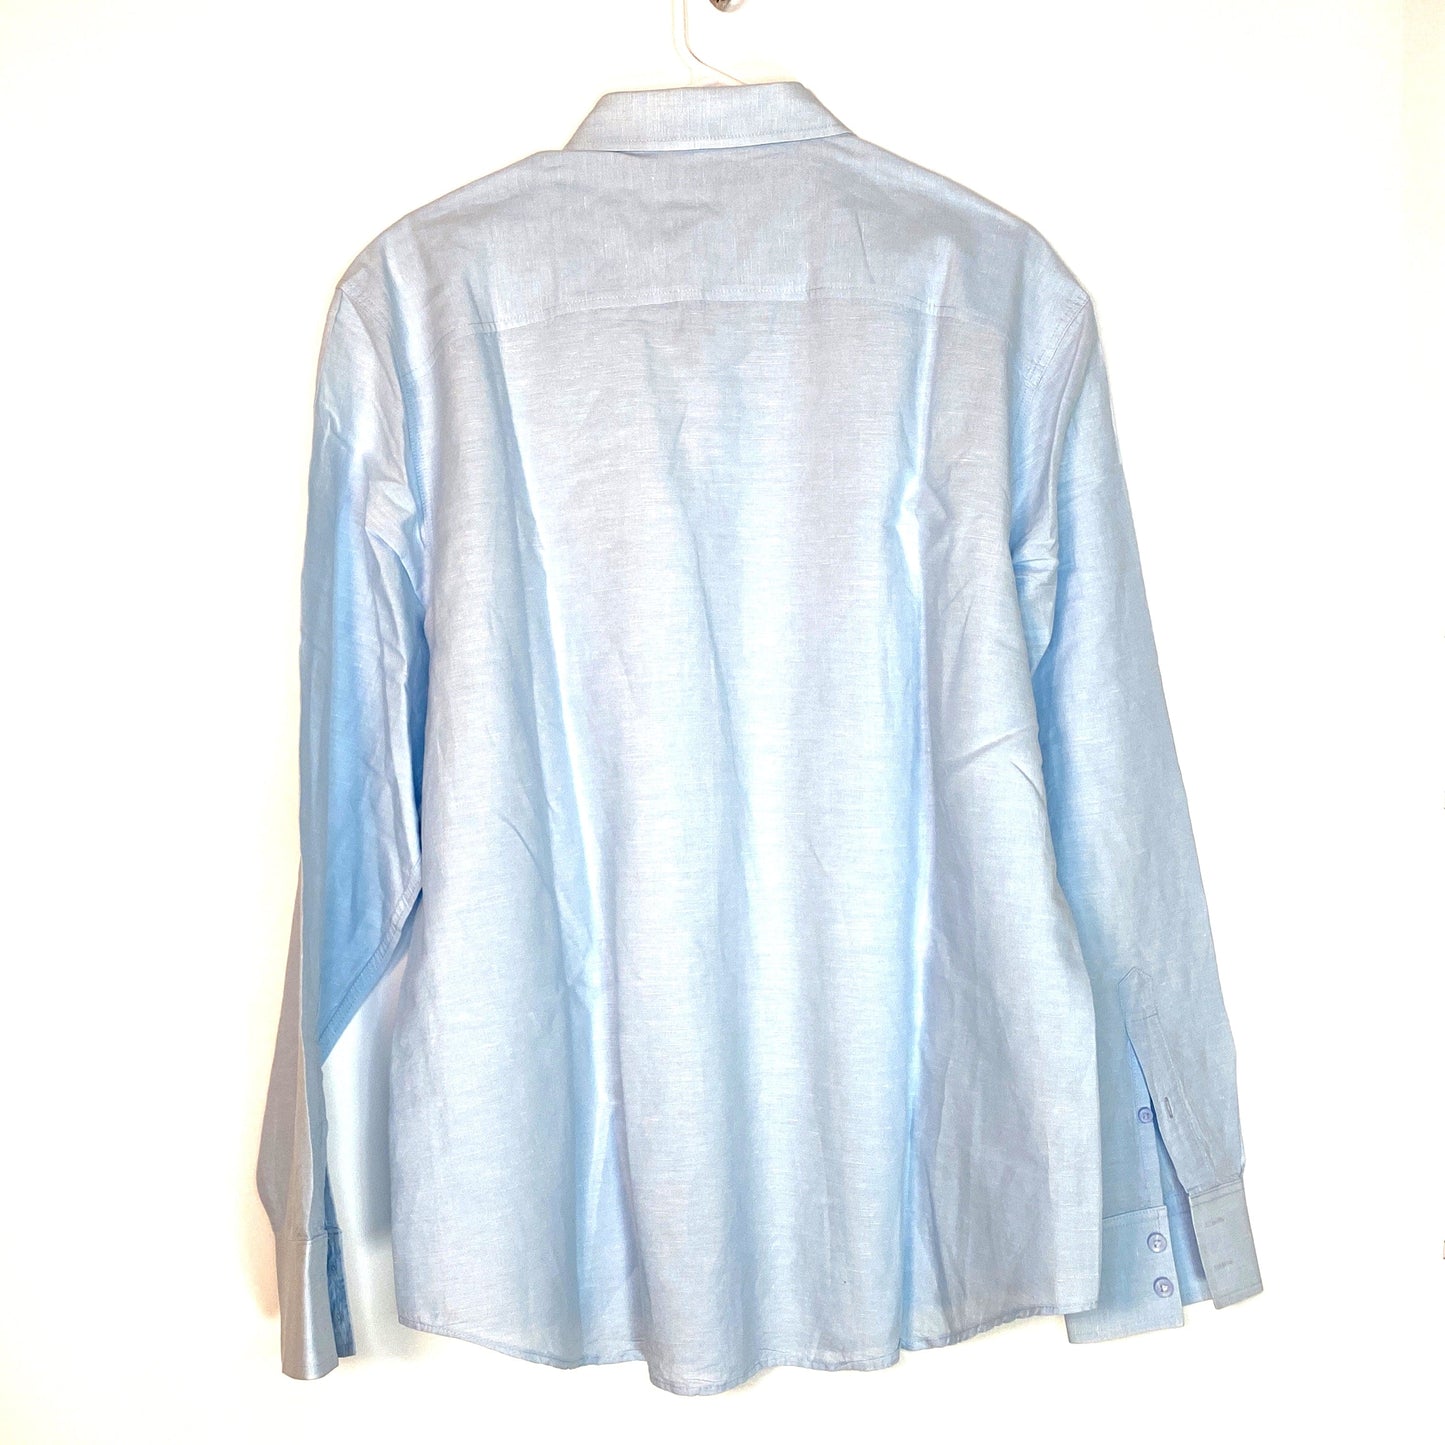 Cubavera Mens Size XL Blue Linen Blend Shirt Button-Up L/s